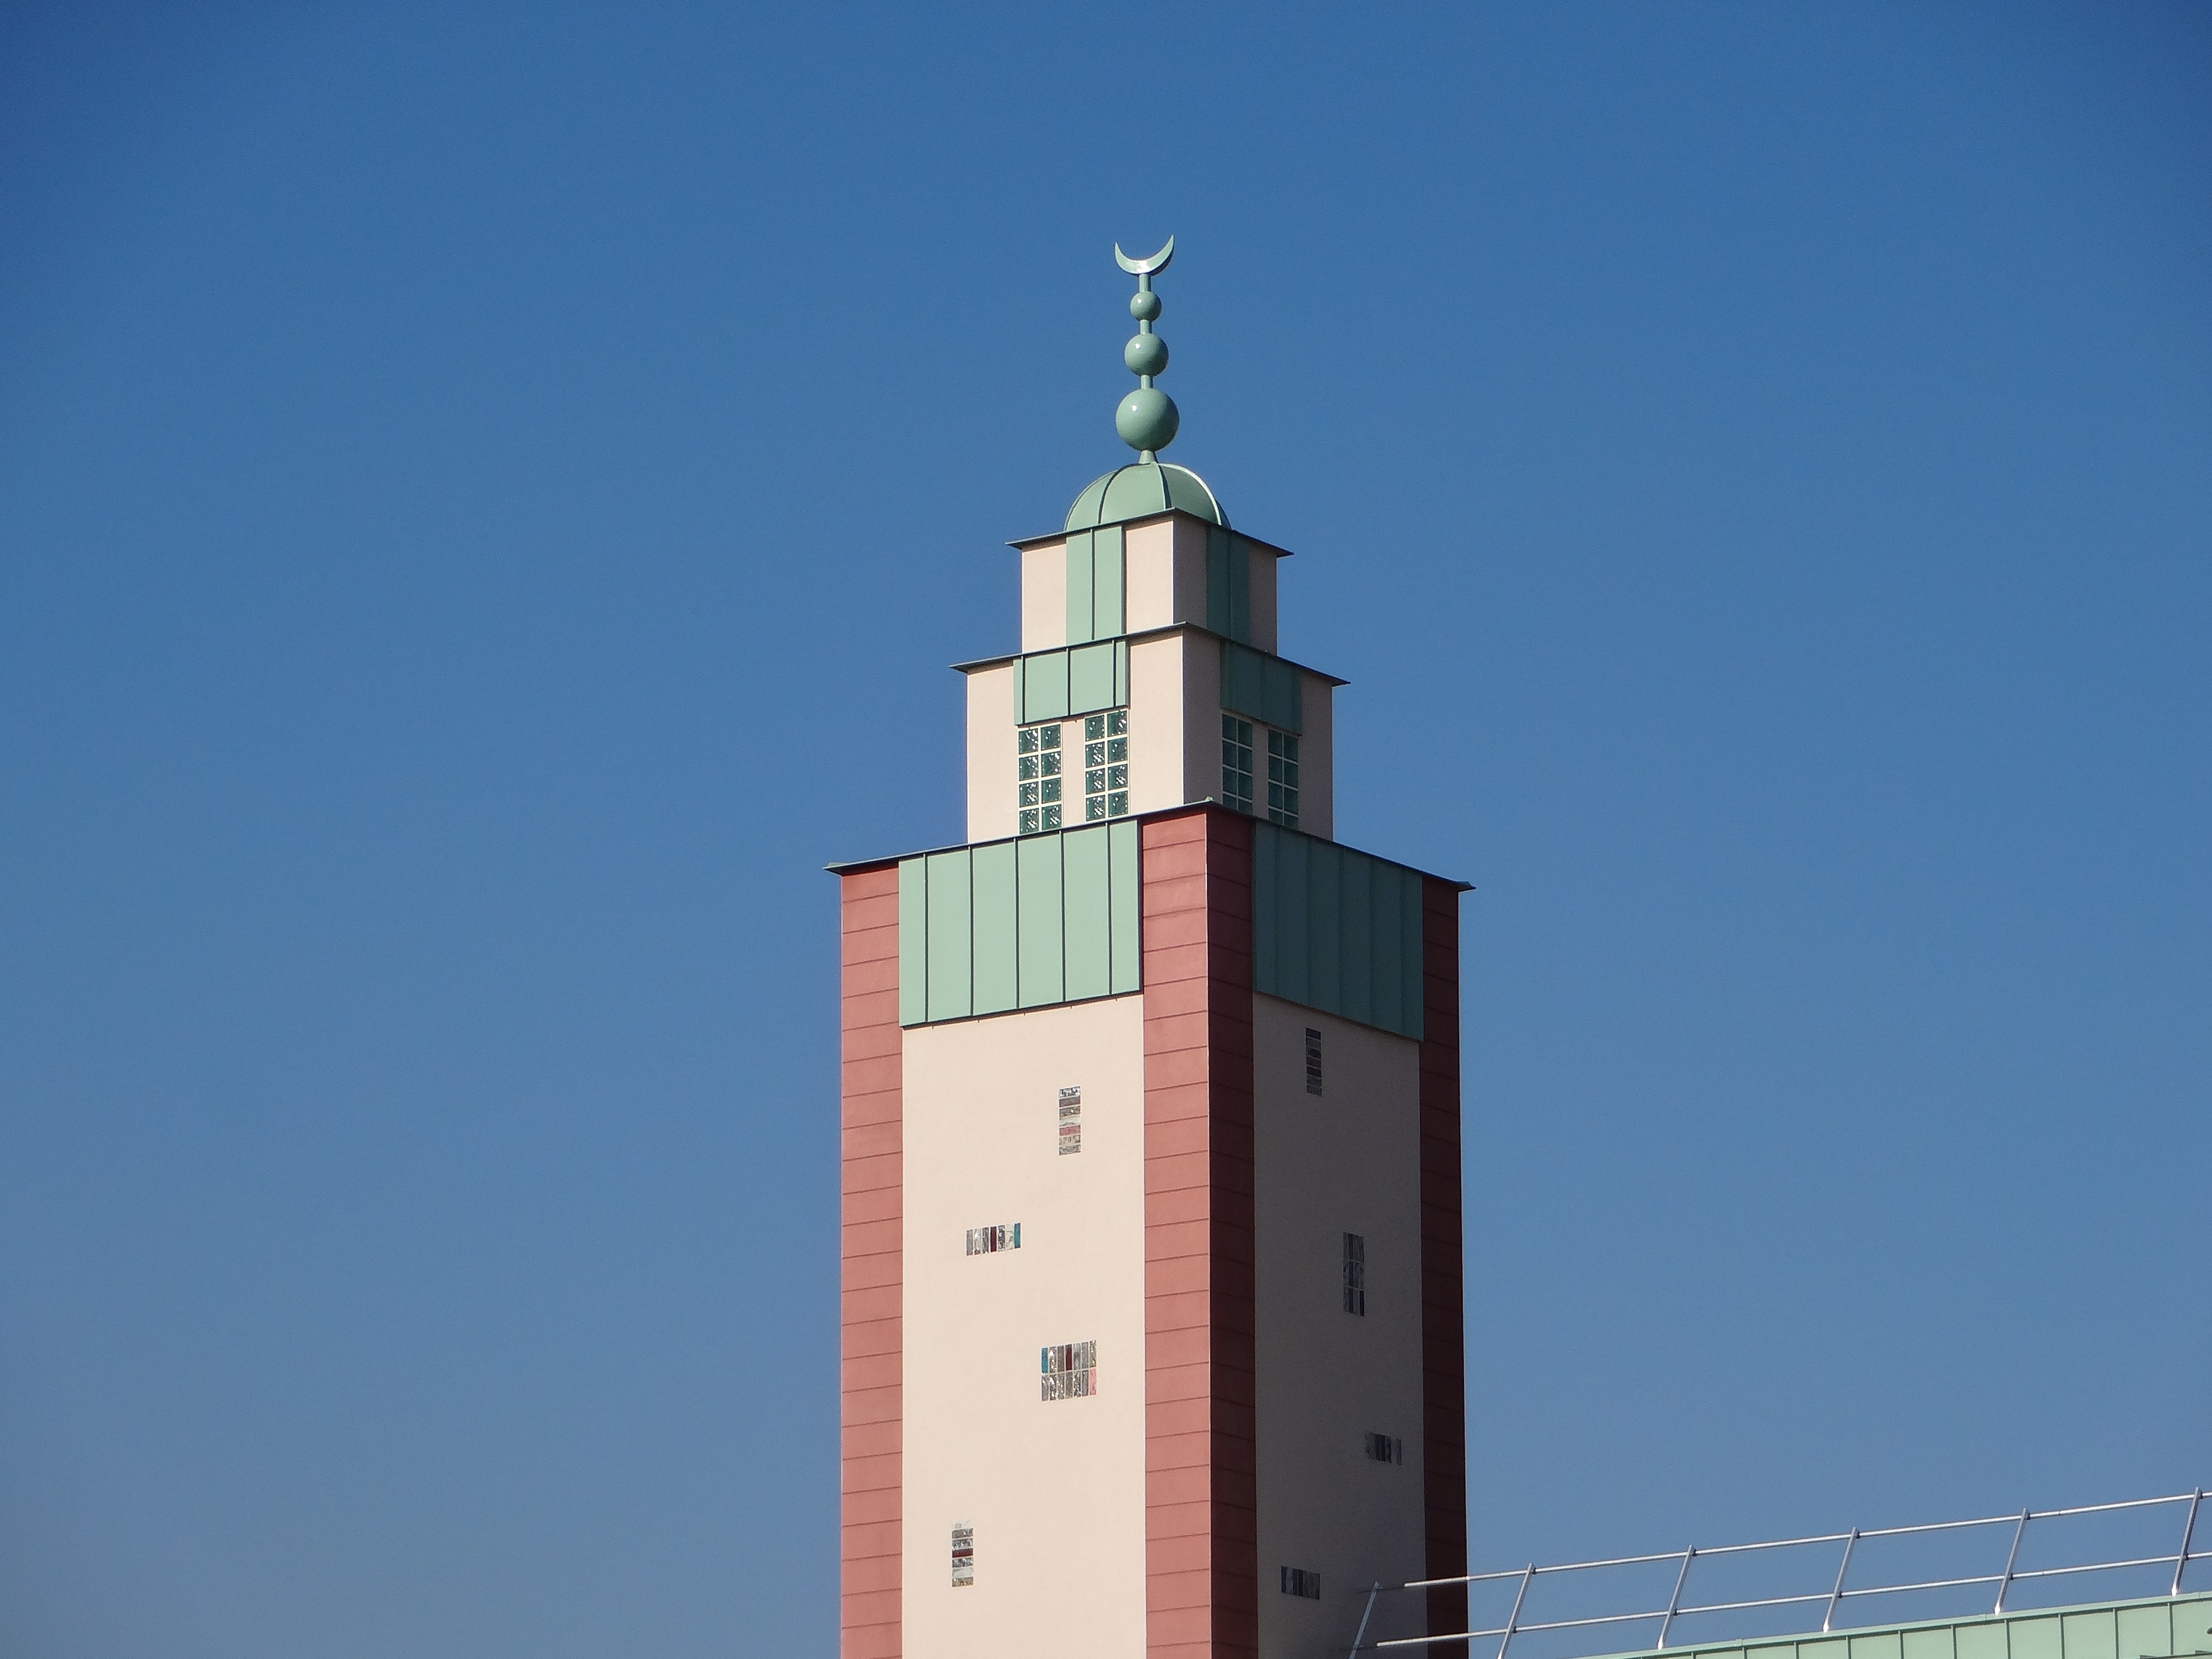 Le minaret1